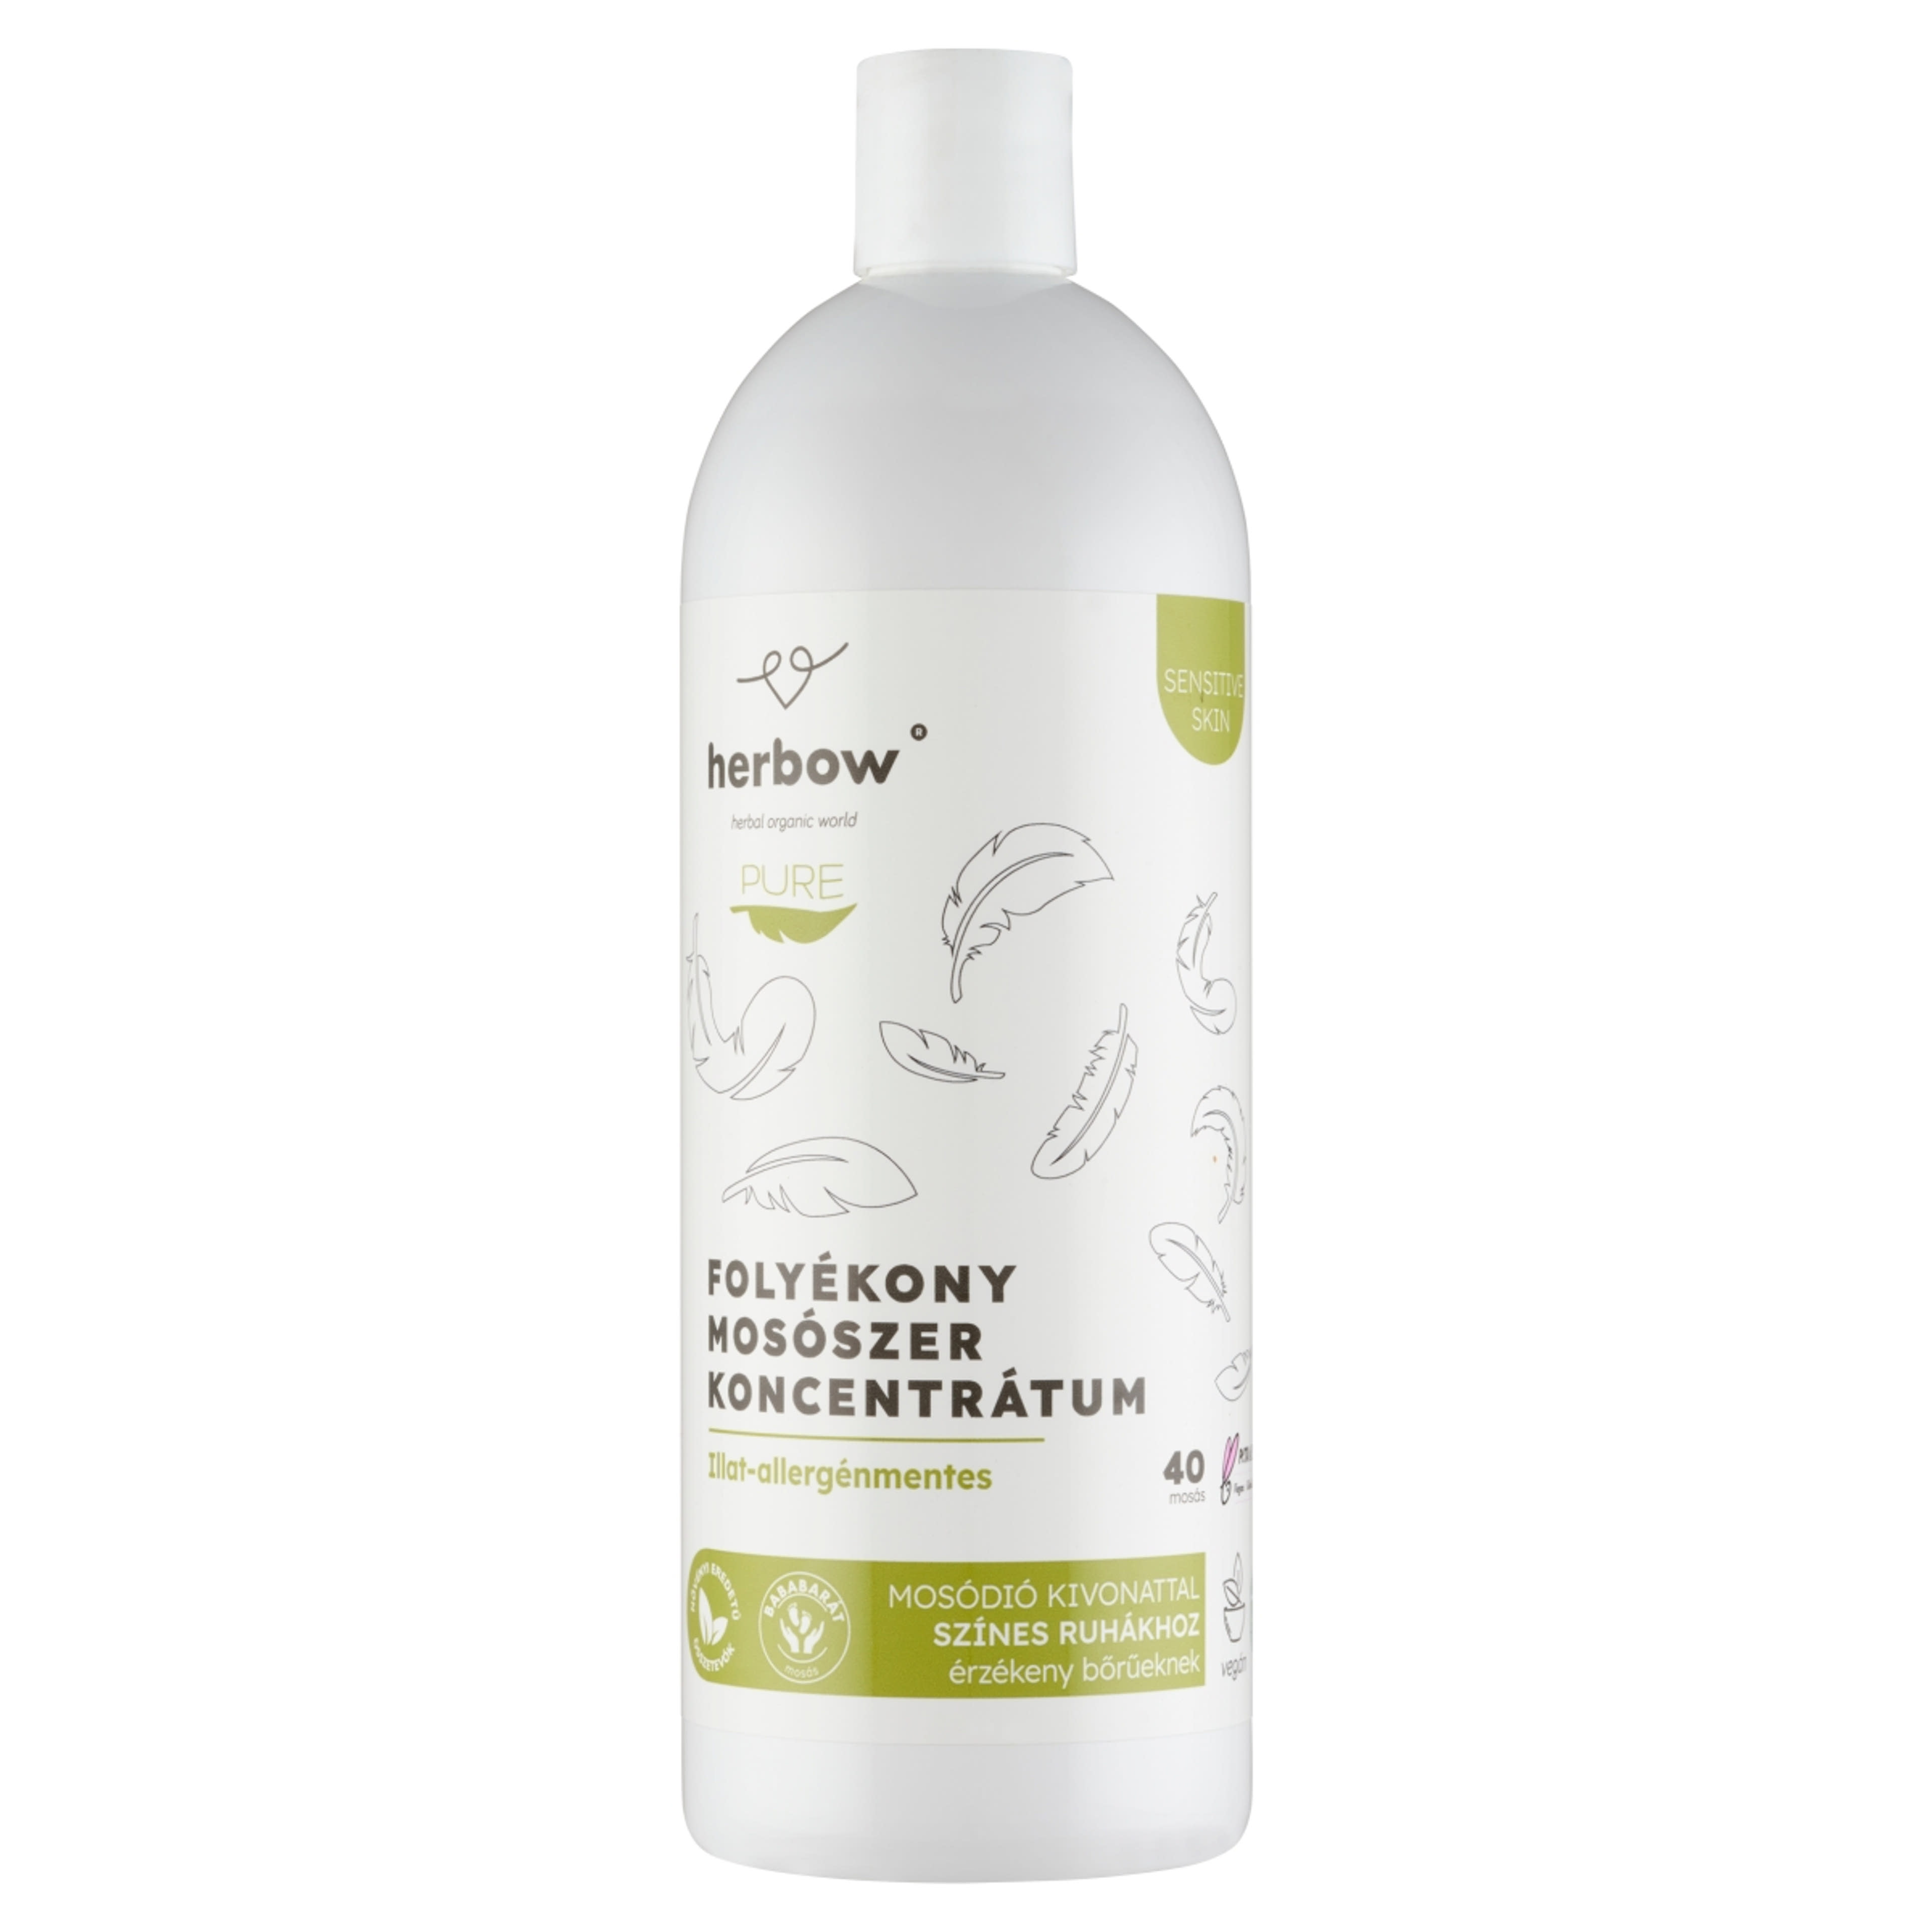 Herbow Pure folyékony mosószer, színes ruhákhoz 40 mosás - 1000 ml